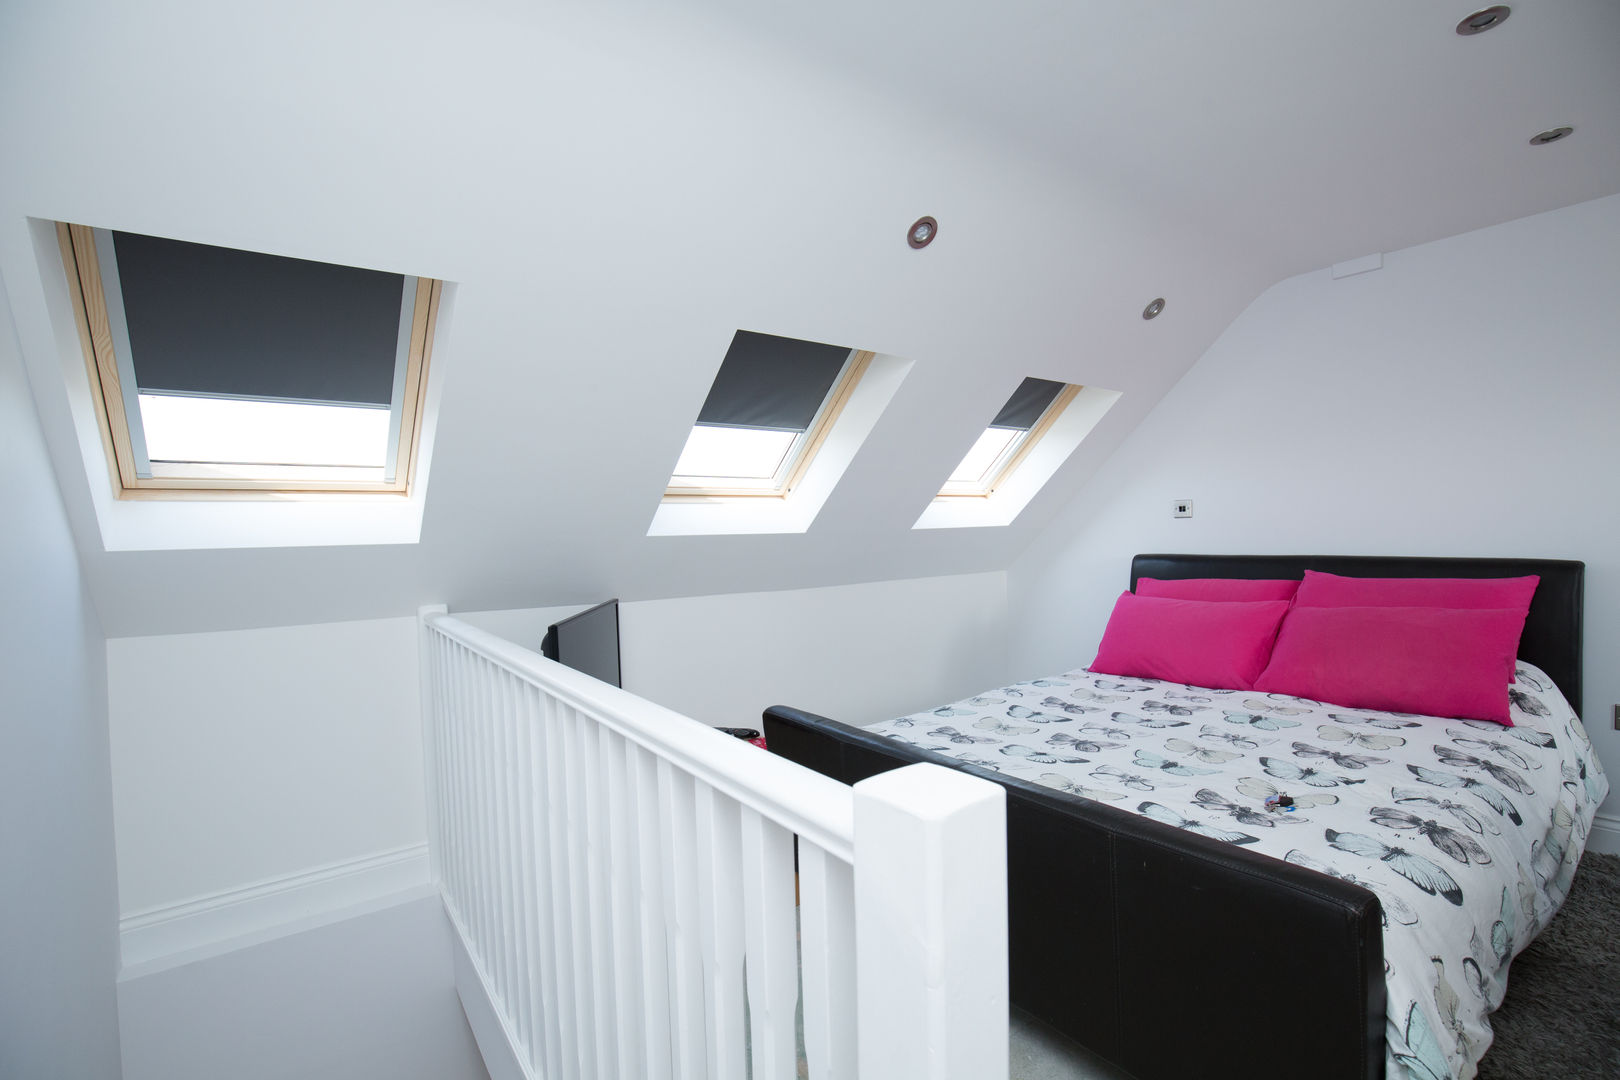 A hidden bedroom, perfect for your teen! homify Dormitorios minimalistas bedroom,attic bedroom,loft conversion